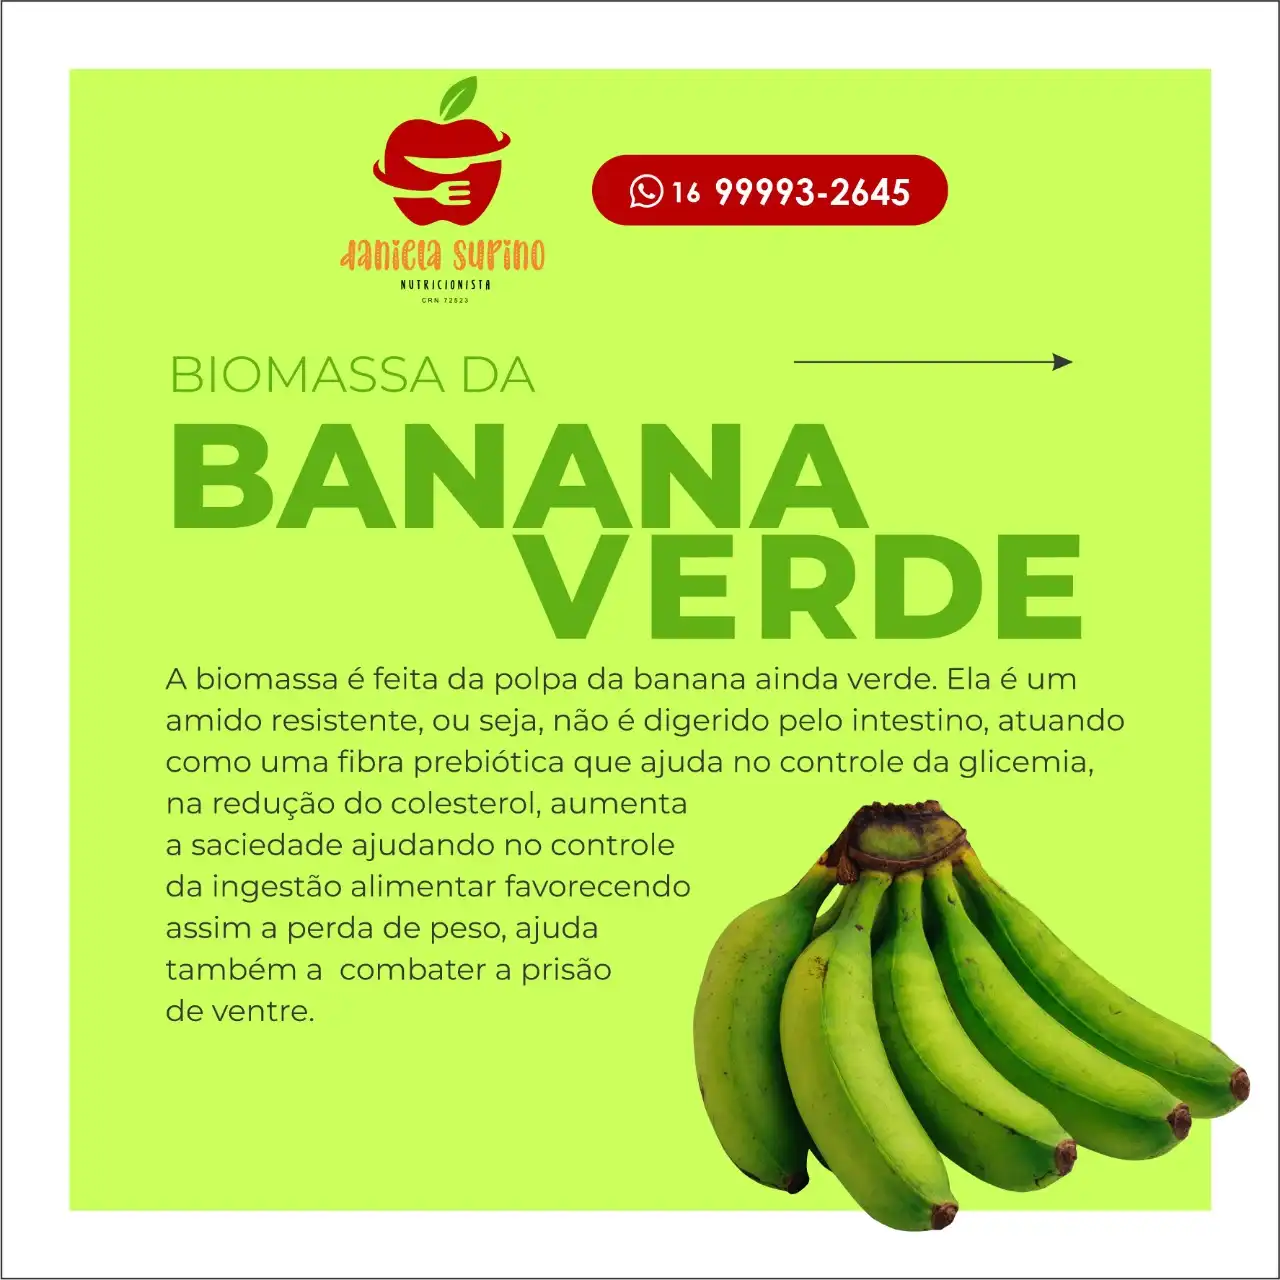 
Propaganda Post Biomassa da Banana Verde Nutrição



